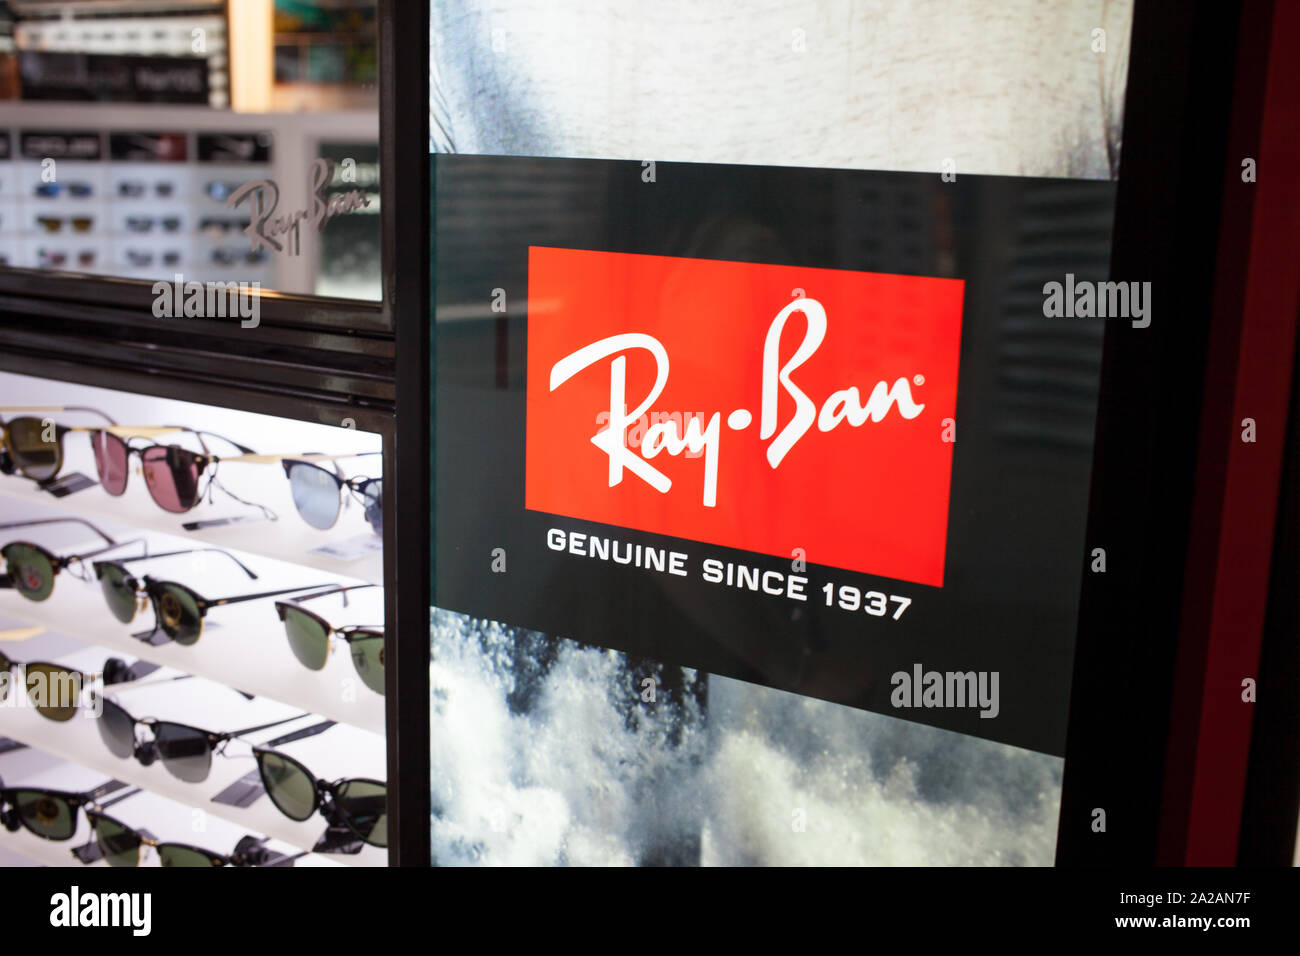 ray ban stock name